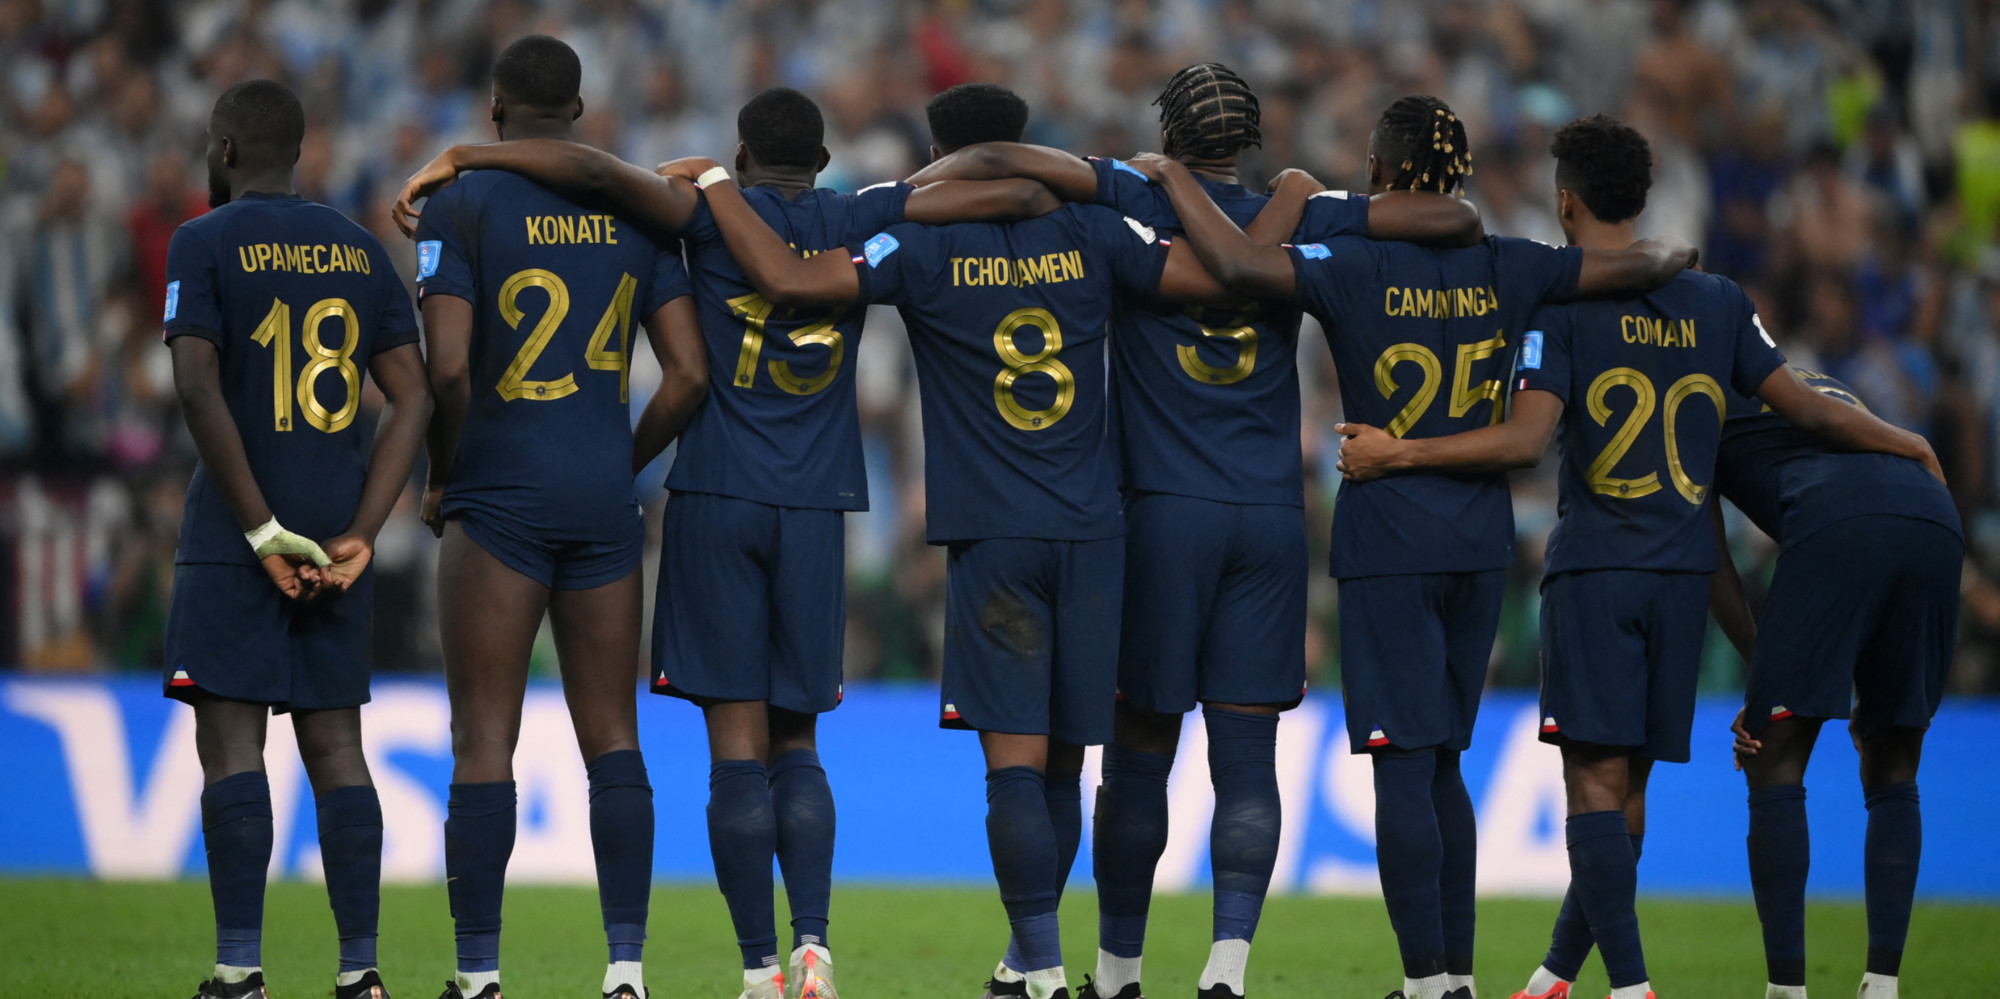 «On ne s’appréciera jamais», une nouvelle polémique révélée en équipe de France